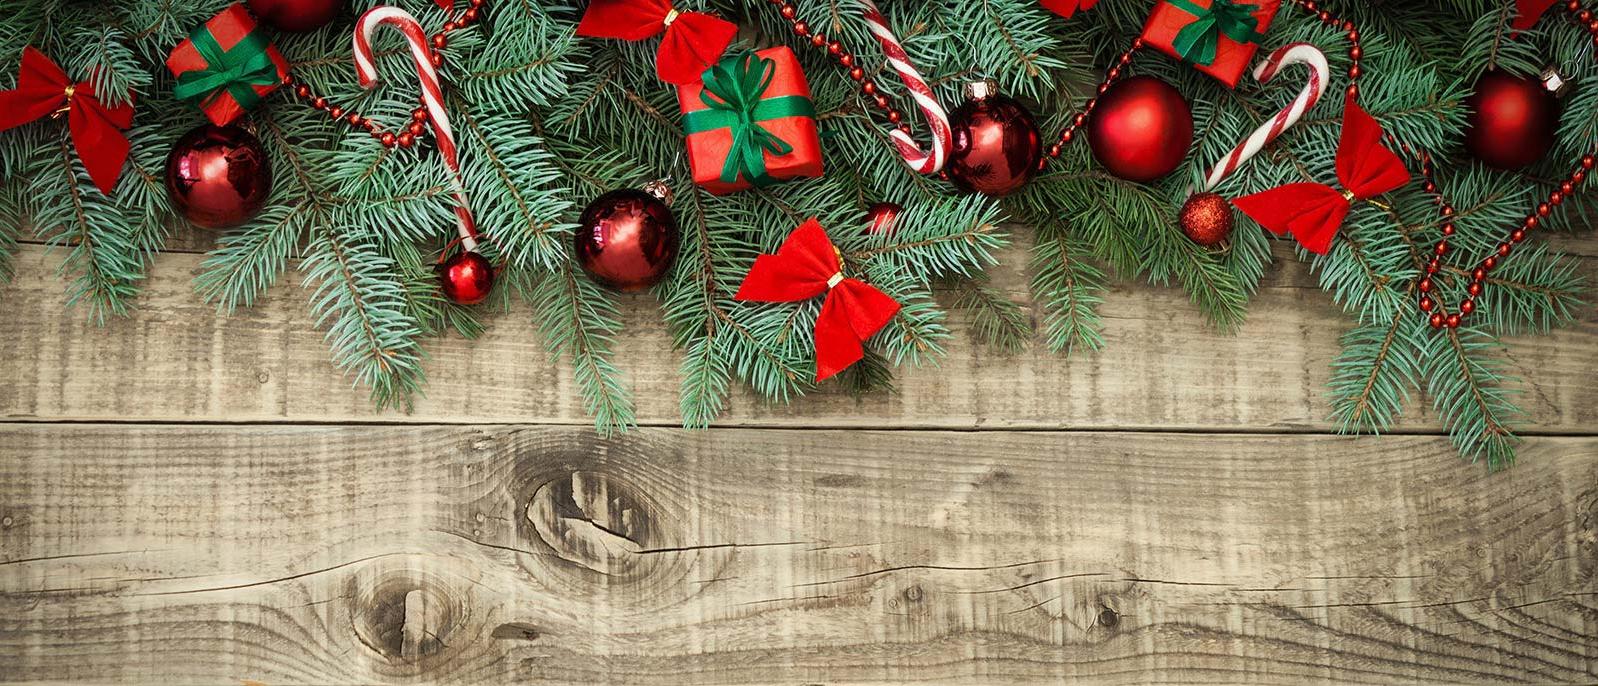 Background Image | Christmas Wood